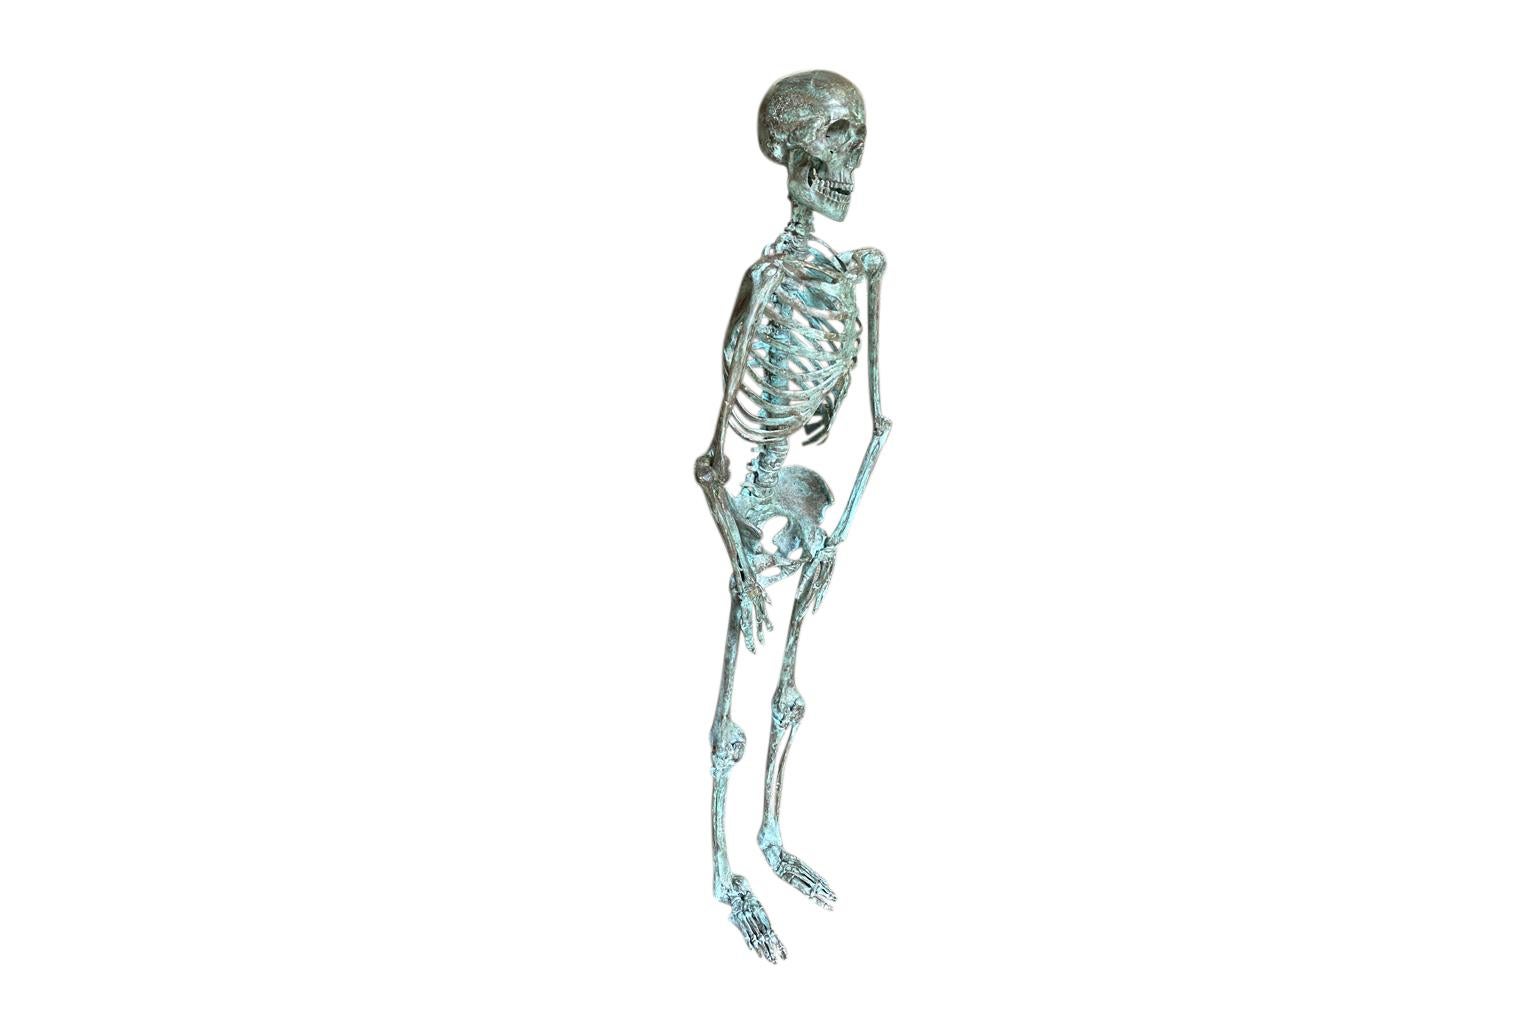 Un sensationnel squelette en bronze du 19ème siècle provenant de l'Université de Médecine de Louvain - Belgique. Un excellent complément à tout cabinet médical.